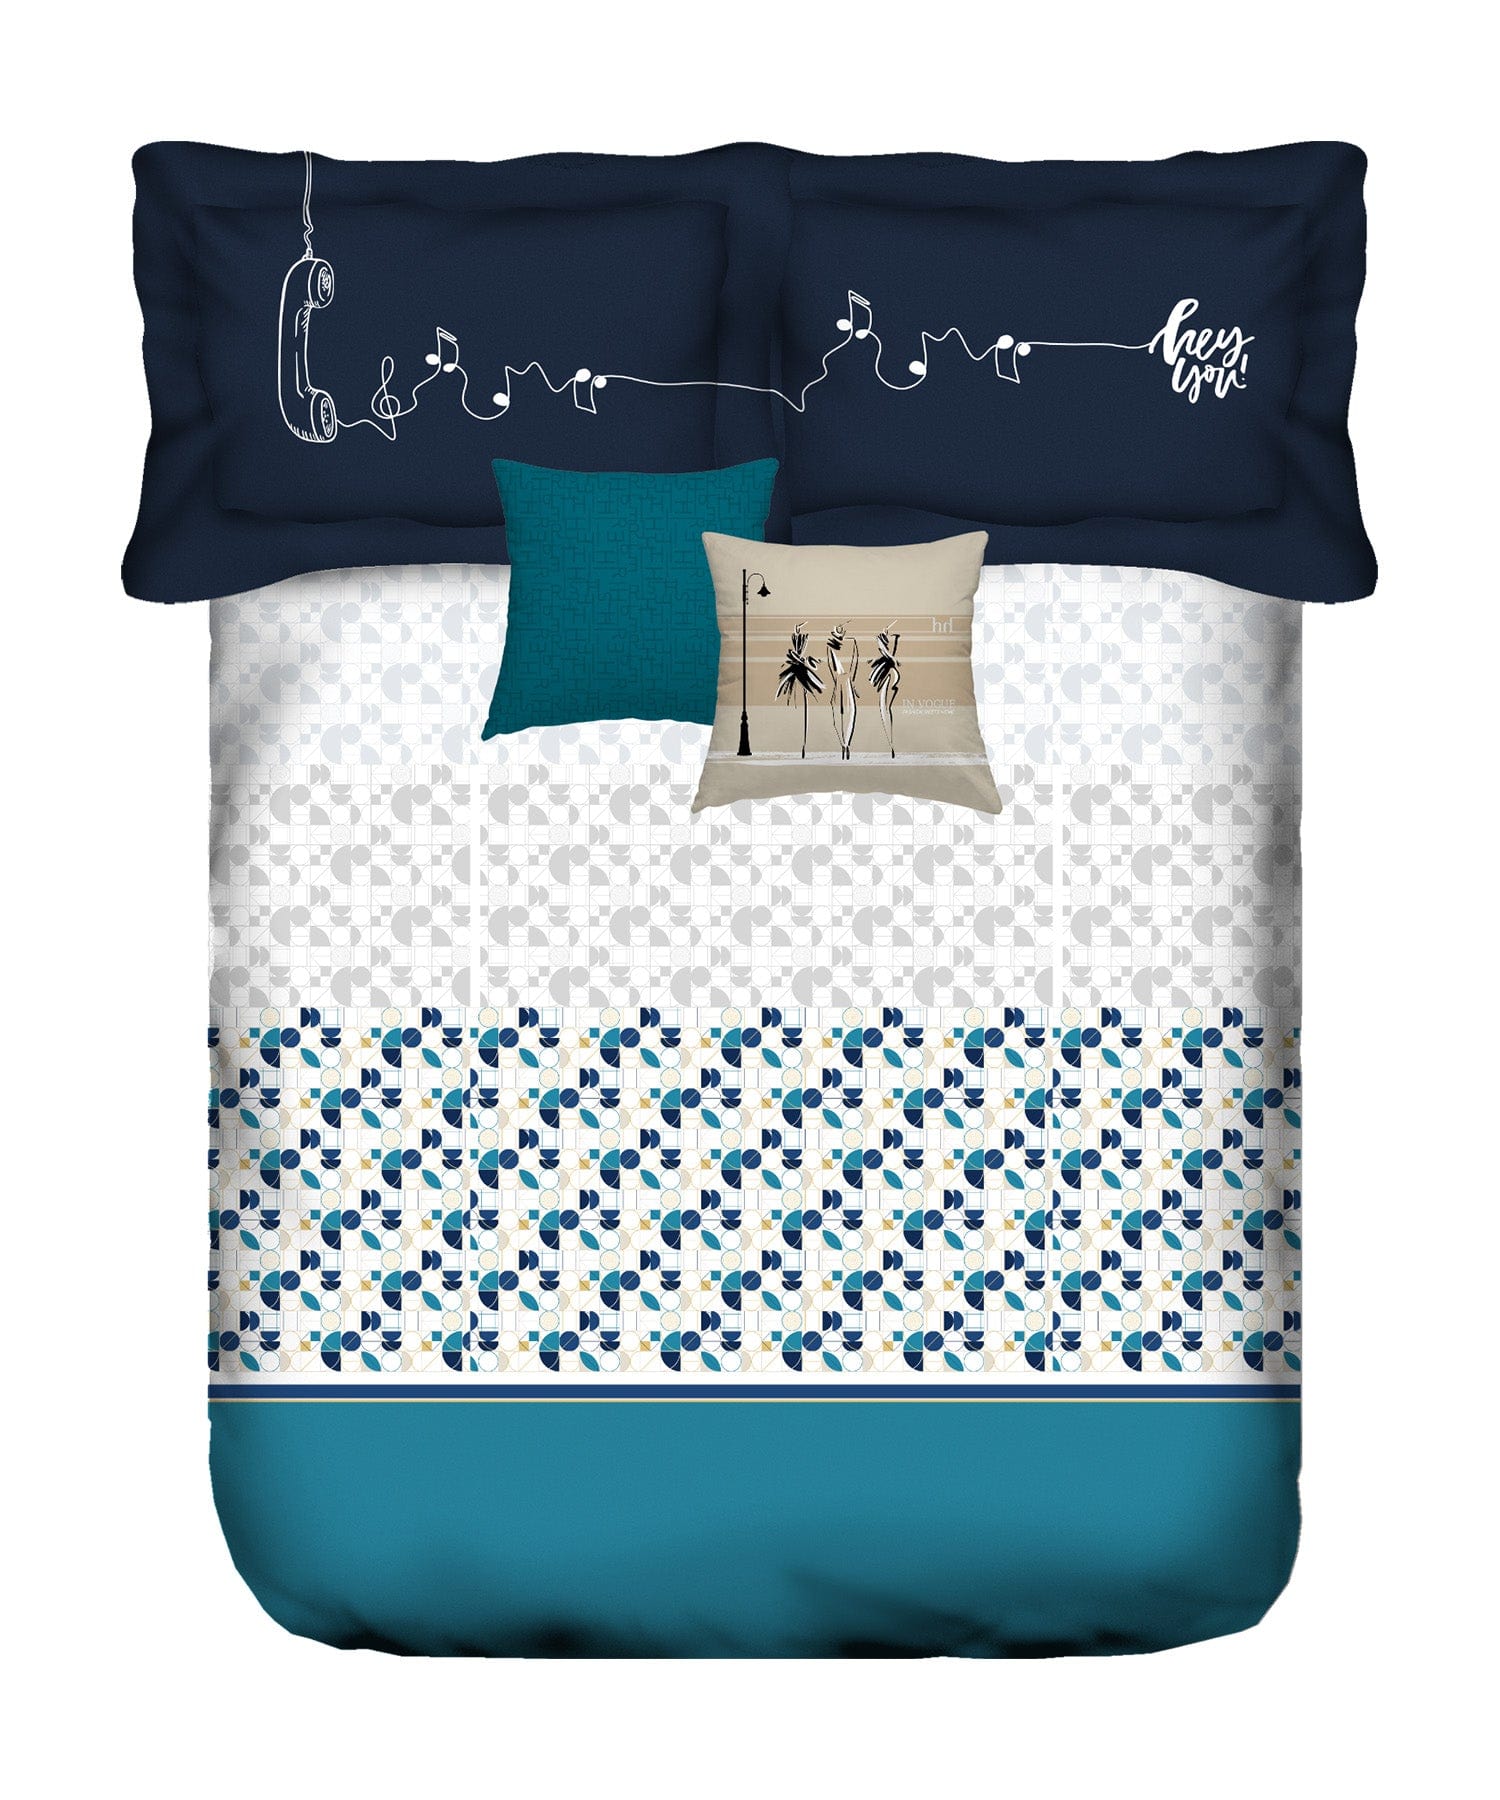 King Size Bedsheet ₹1679/-